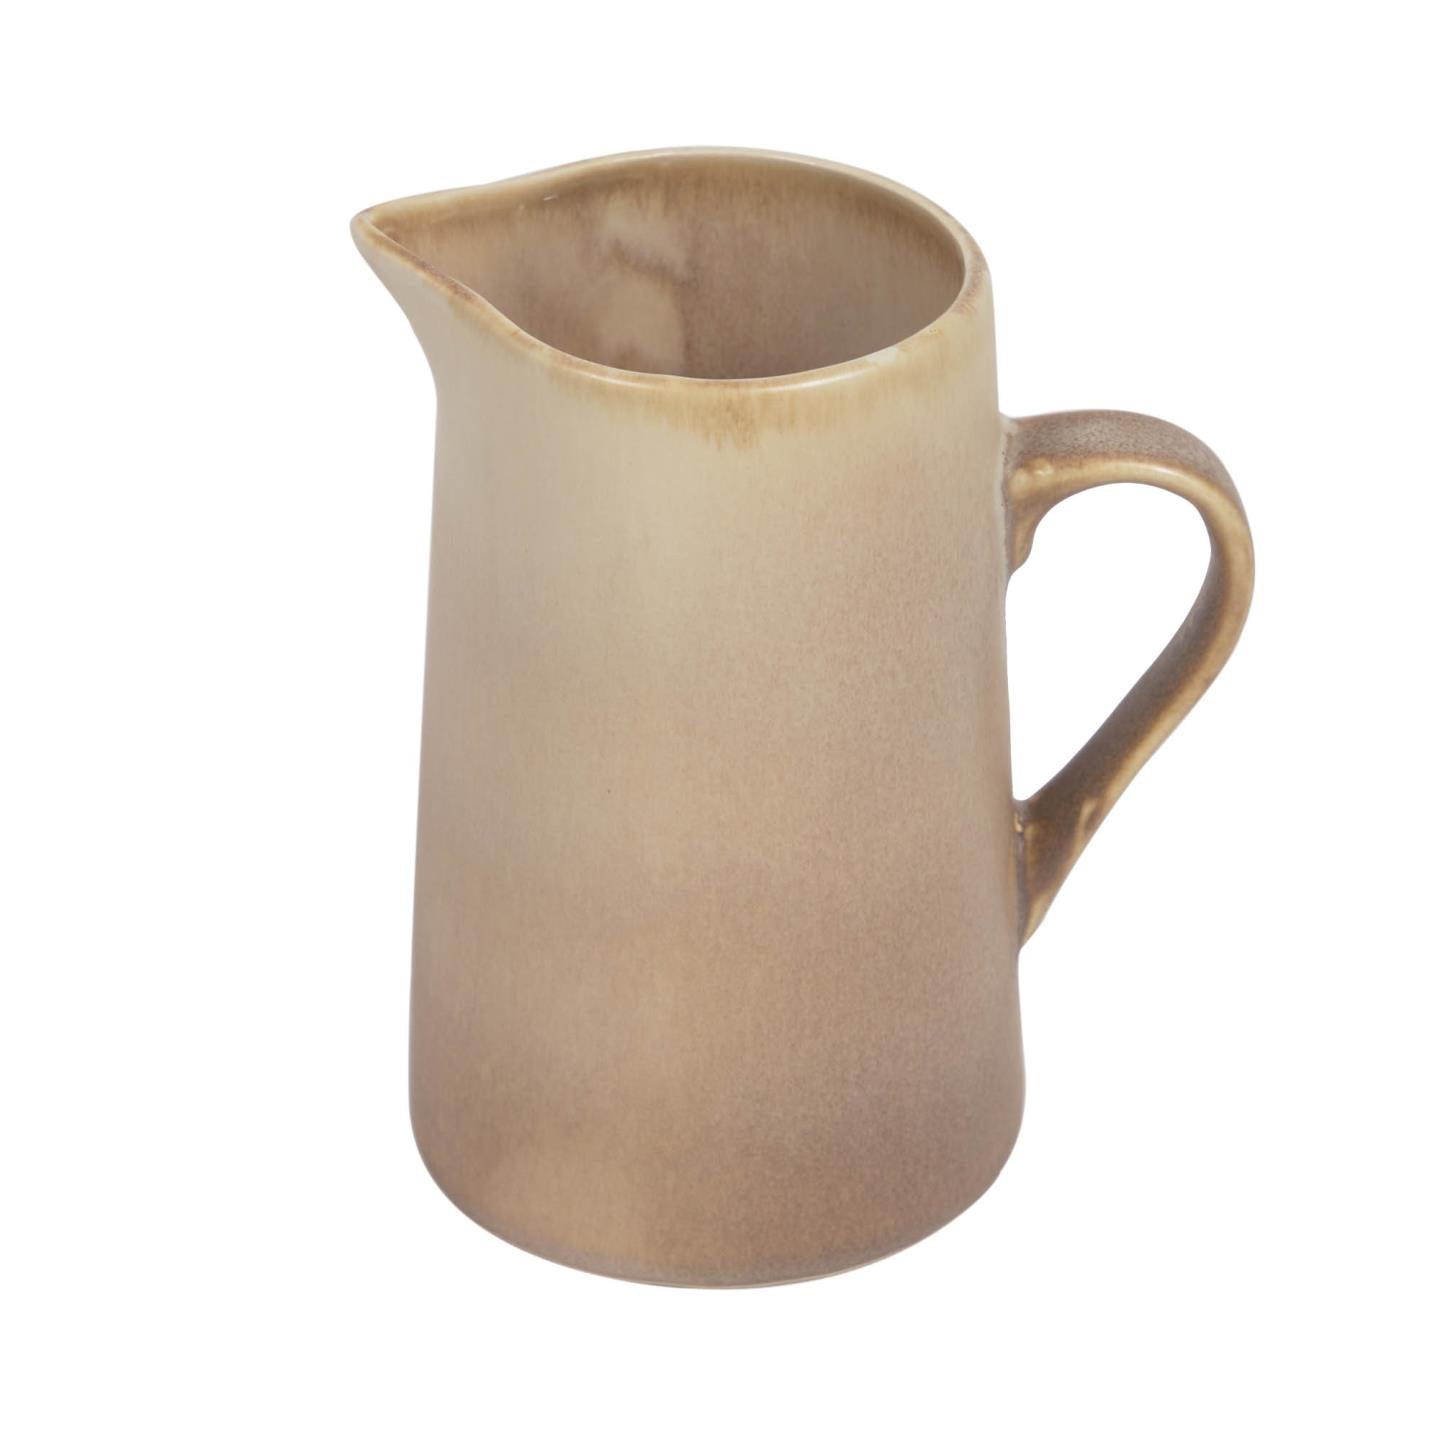 Vreni ceramic milk jug in beige